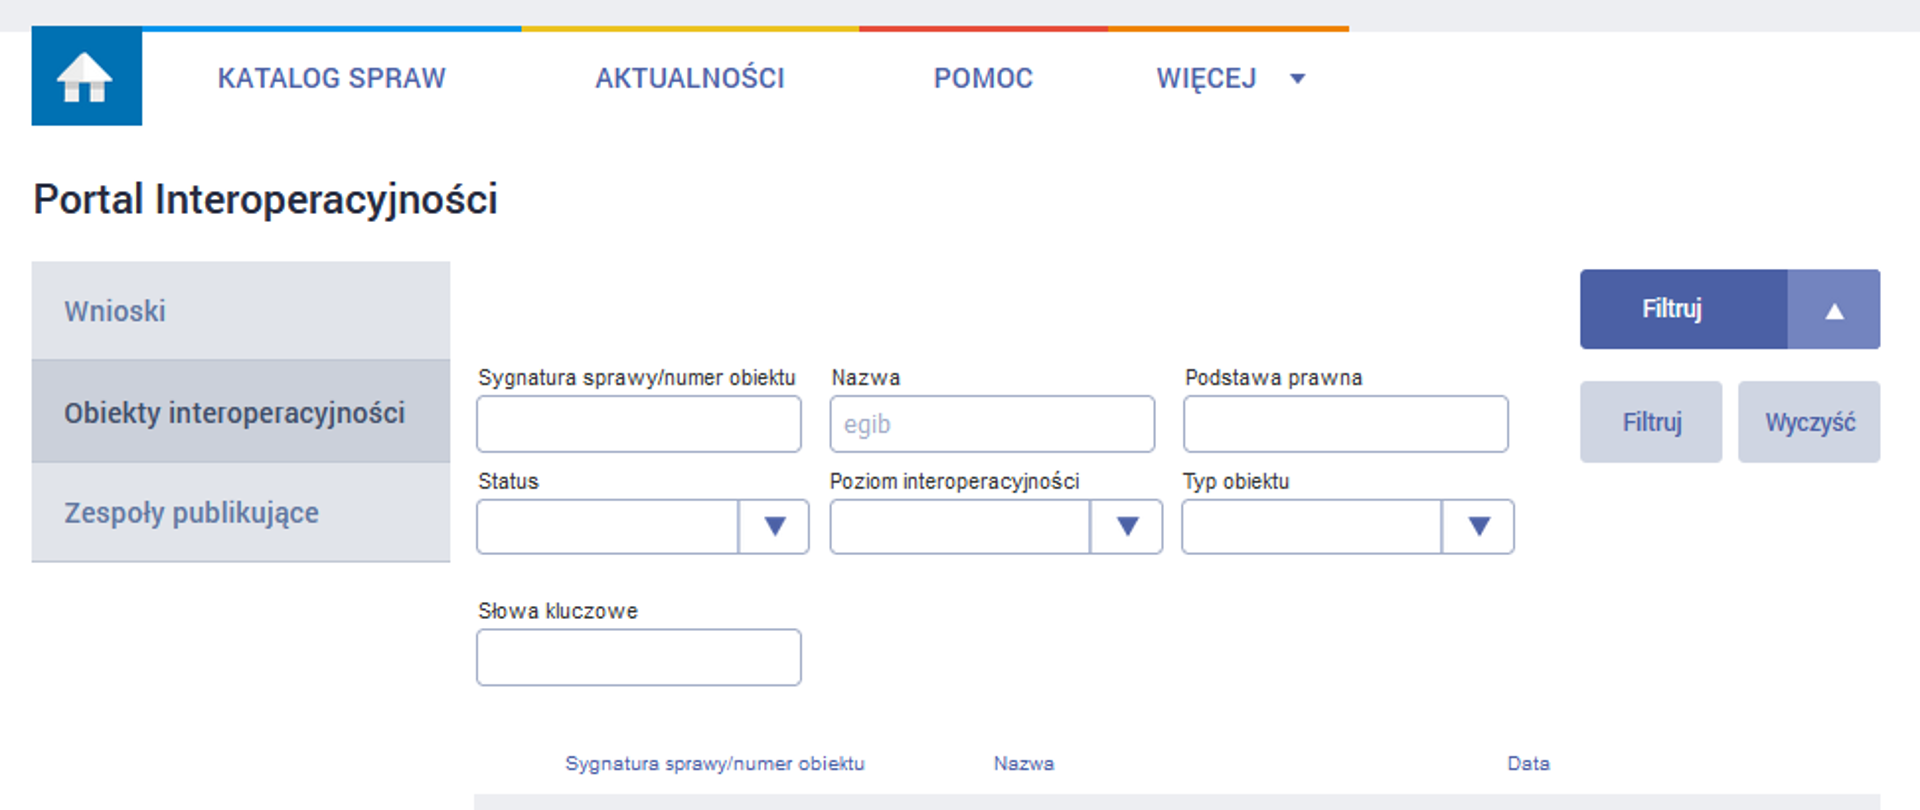 Ilustracja przedstawia zrzut z ekranu serwisu epuap.gov.pl zakładka Repozytorium Interoperacyjności, skąd moźna pobrać schematy aplikacyjne xsd.